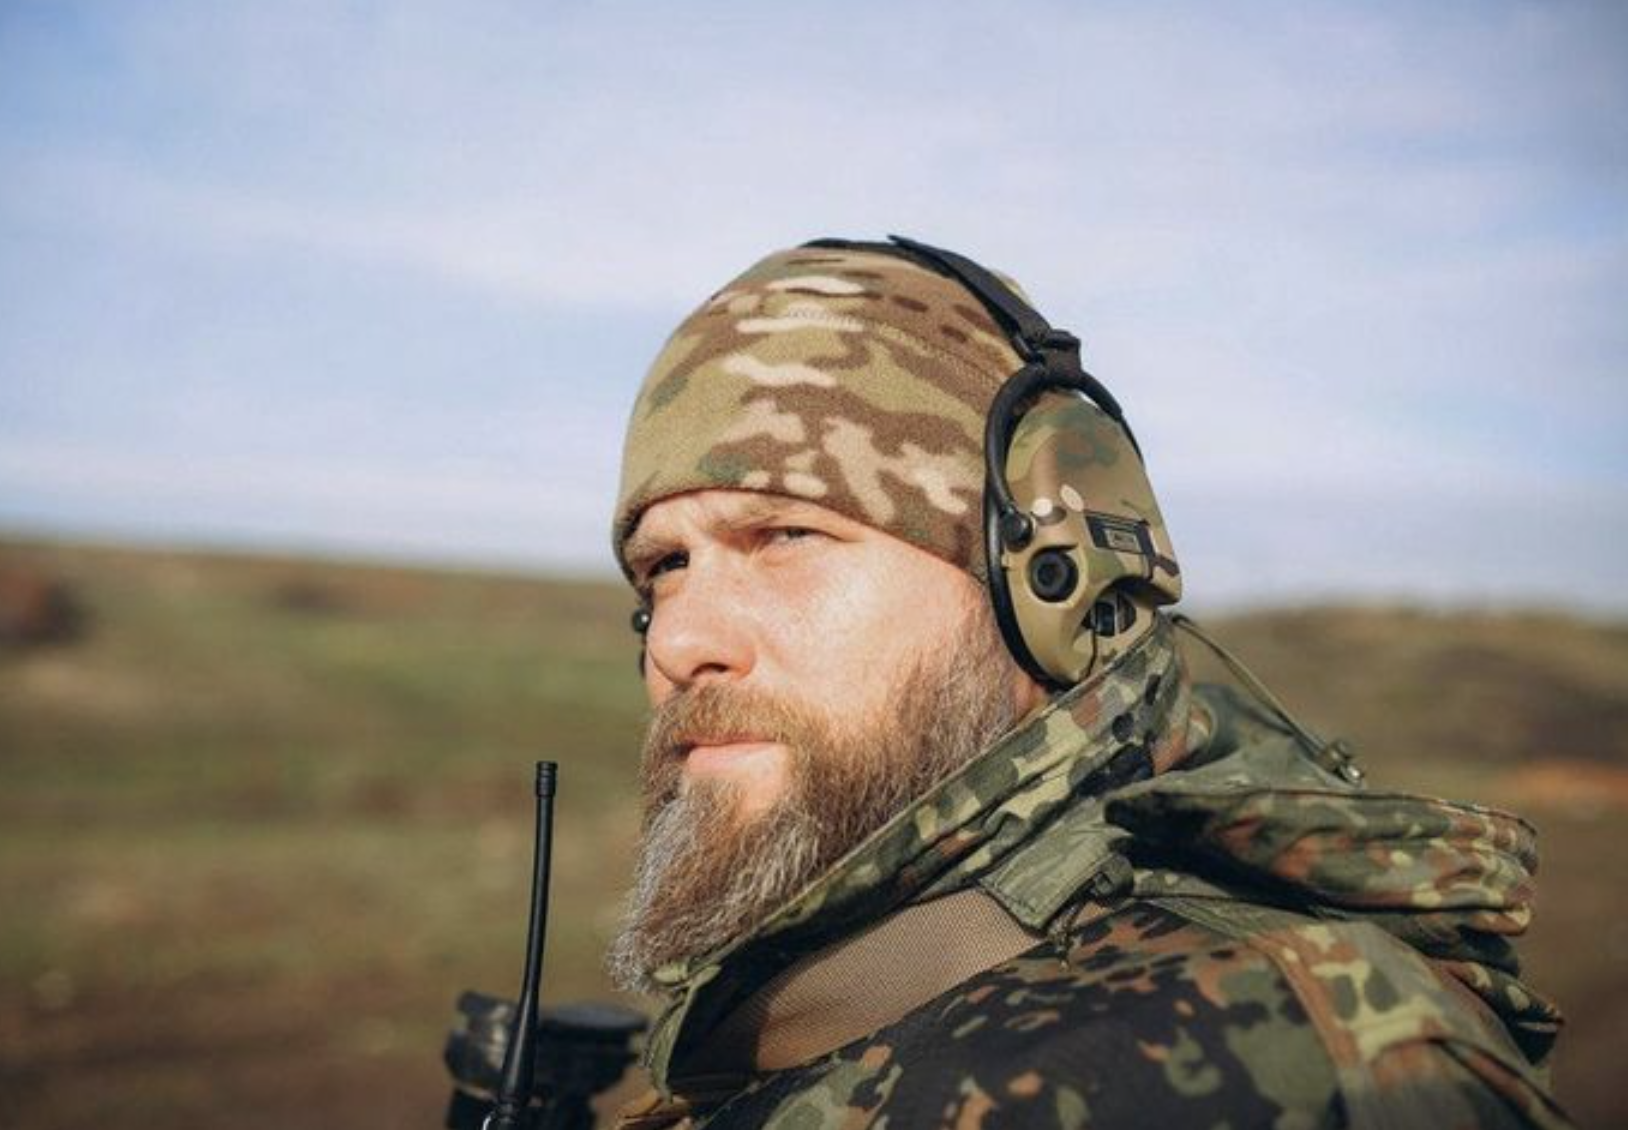 Відомий український актор-воїн рефлекторно вистрілив у колегу в формі армії РФ на знімальному майданчику